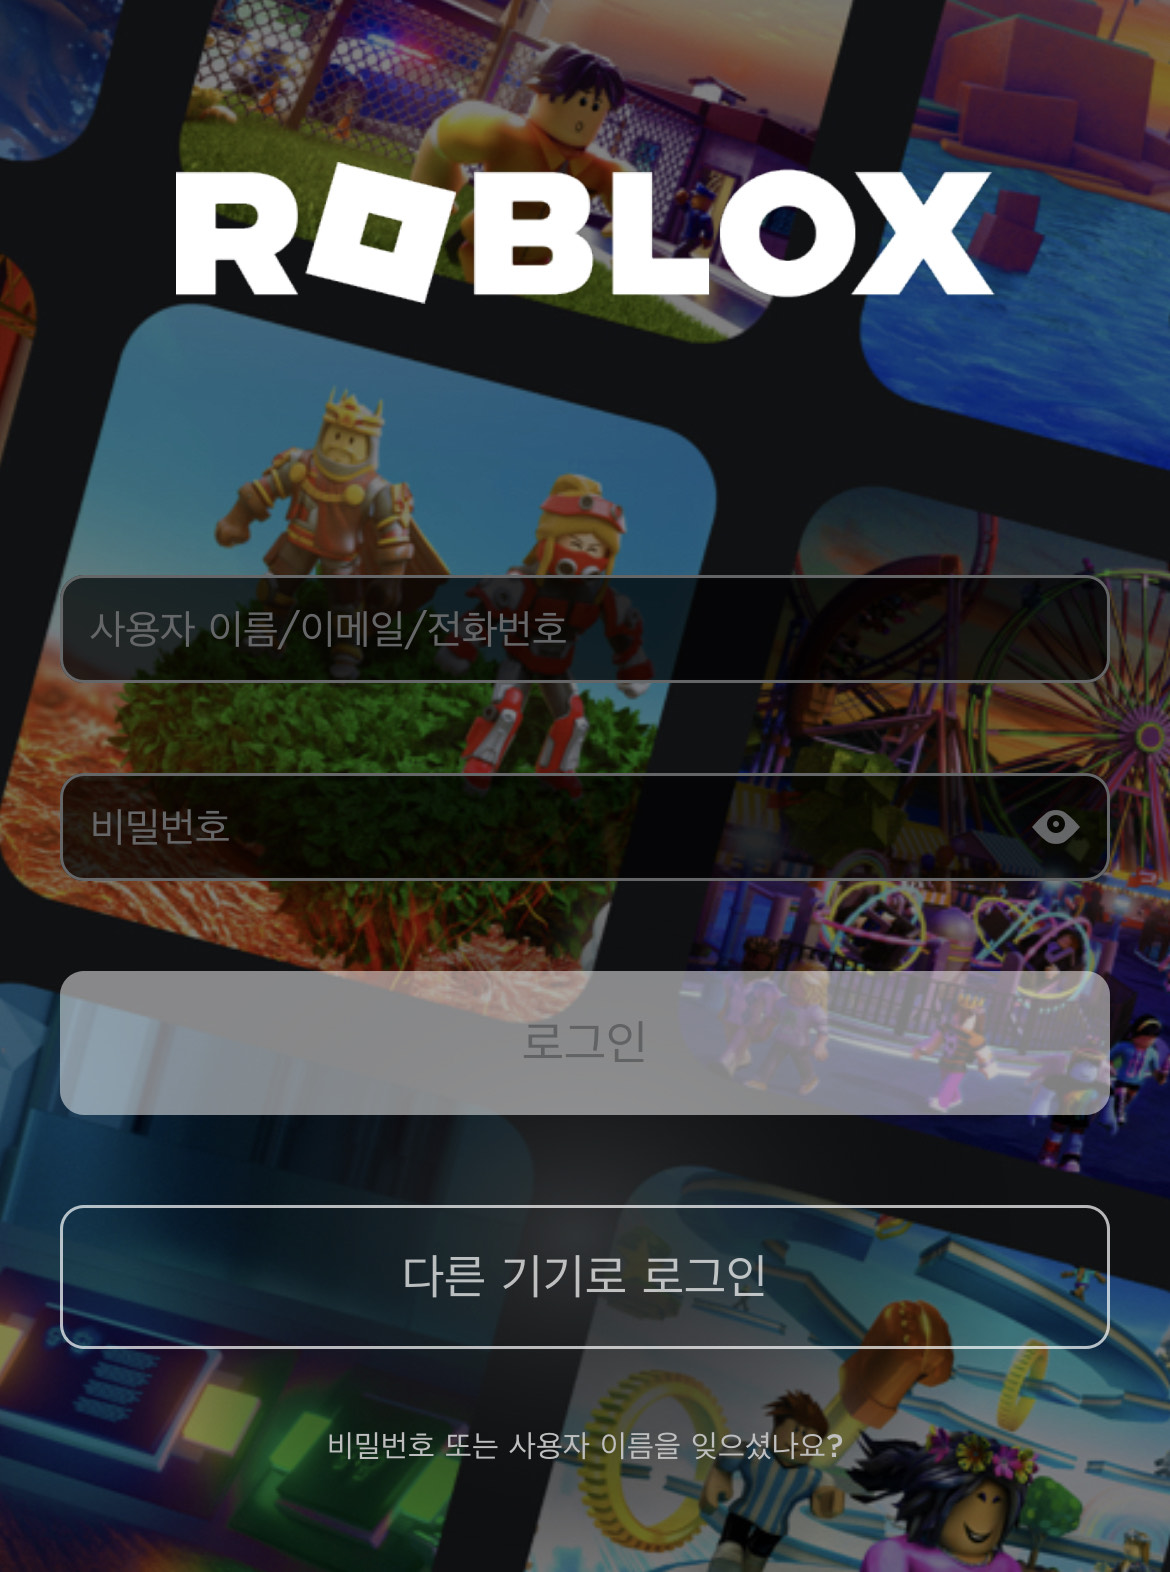 KR_Roblox_Log-in_Mobile_App.jpg